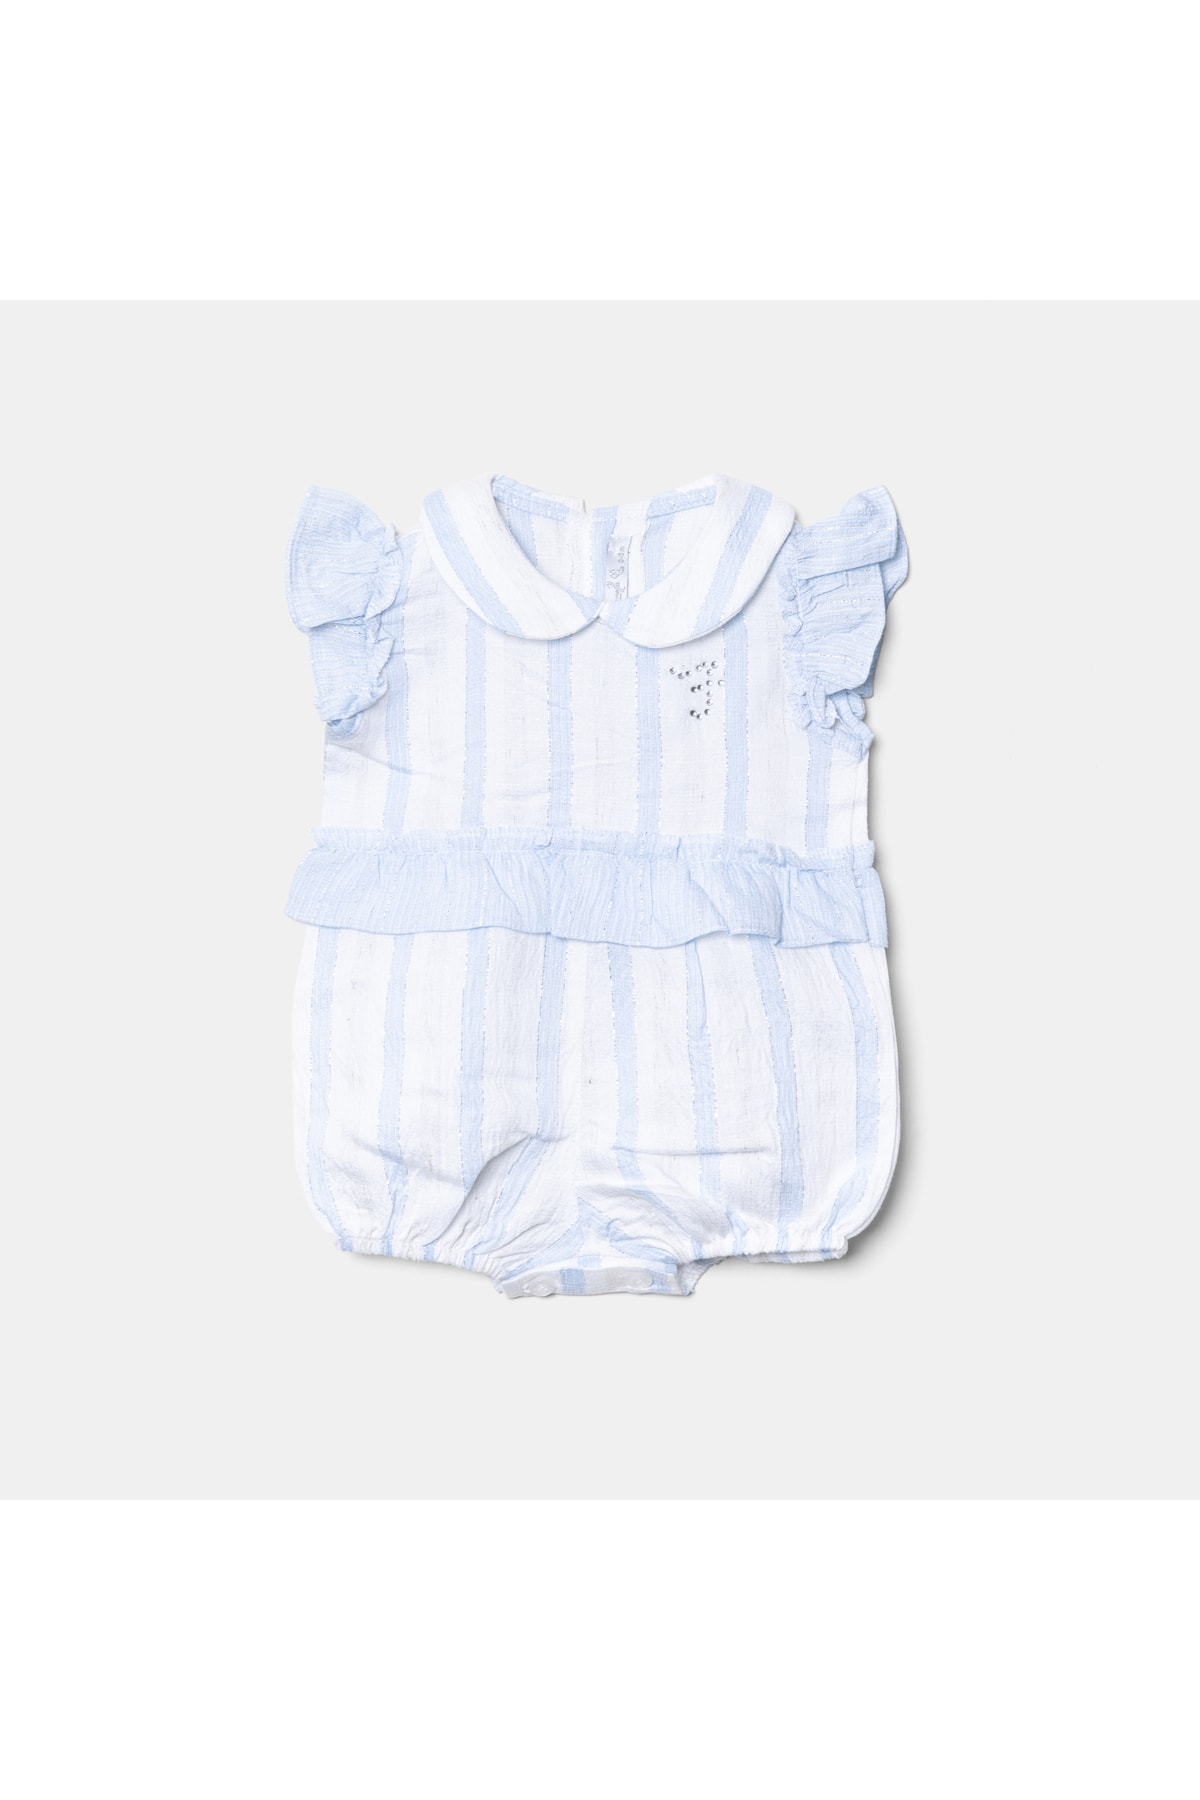 FİORELLA BİGOBABY Kız Bebek Bebe Yaka Fırfırlı Mavi Beyaz Çizgili Yenidoğan Bebek Tulumu 2044